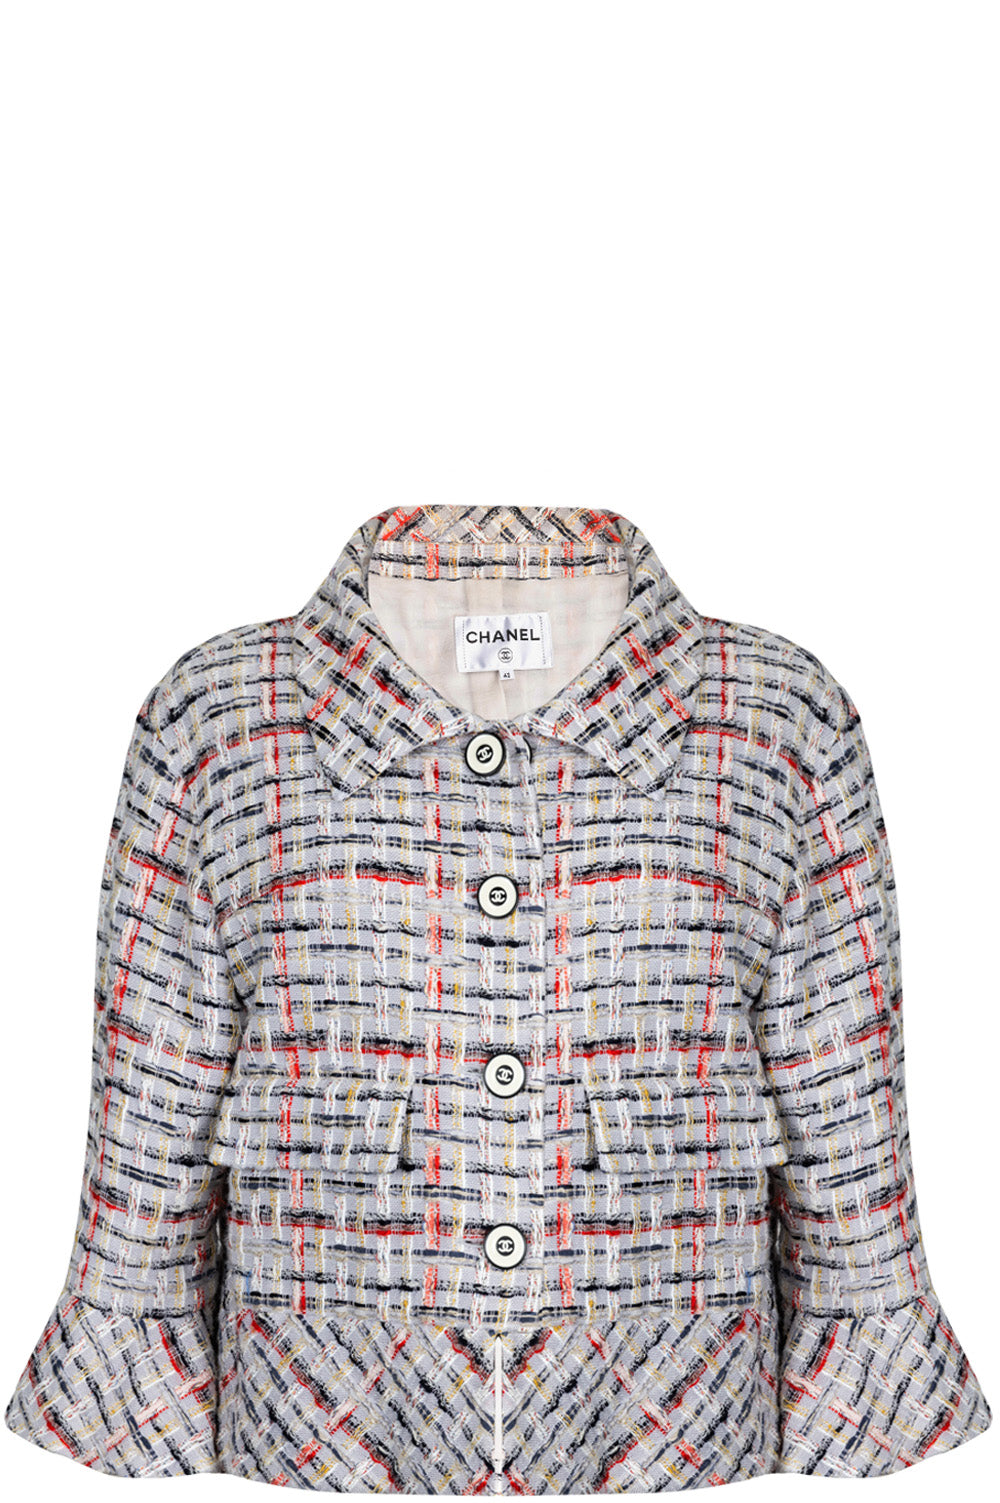 CHANEL 18P Tweed Jacket Multicolor